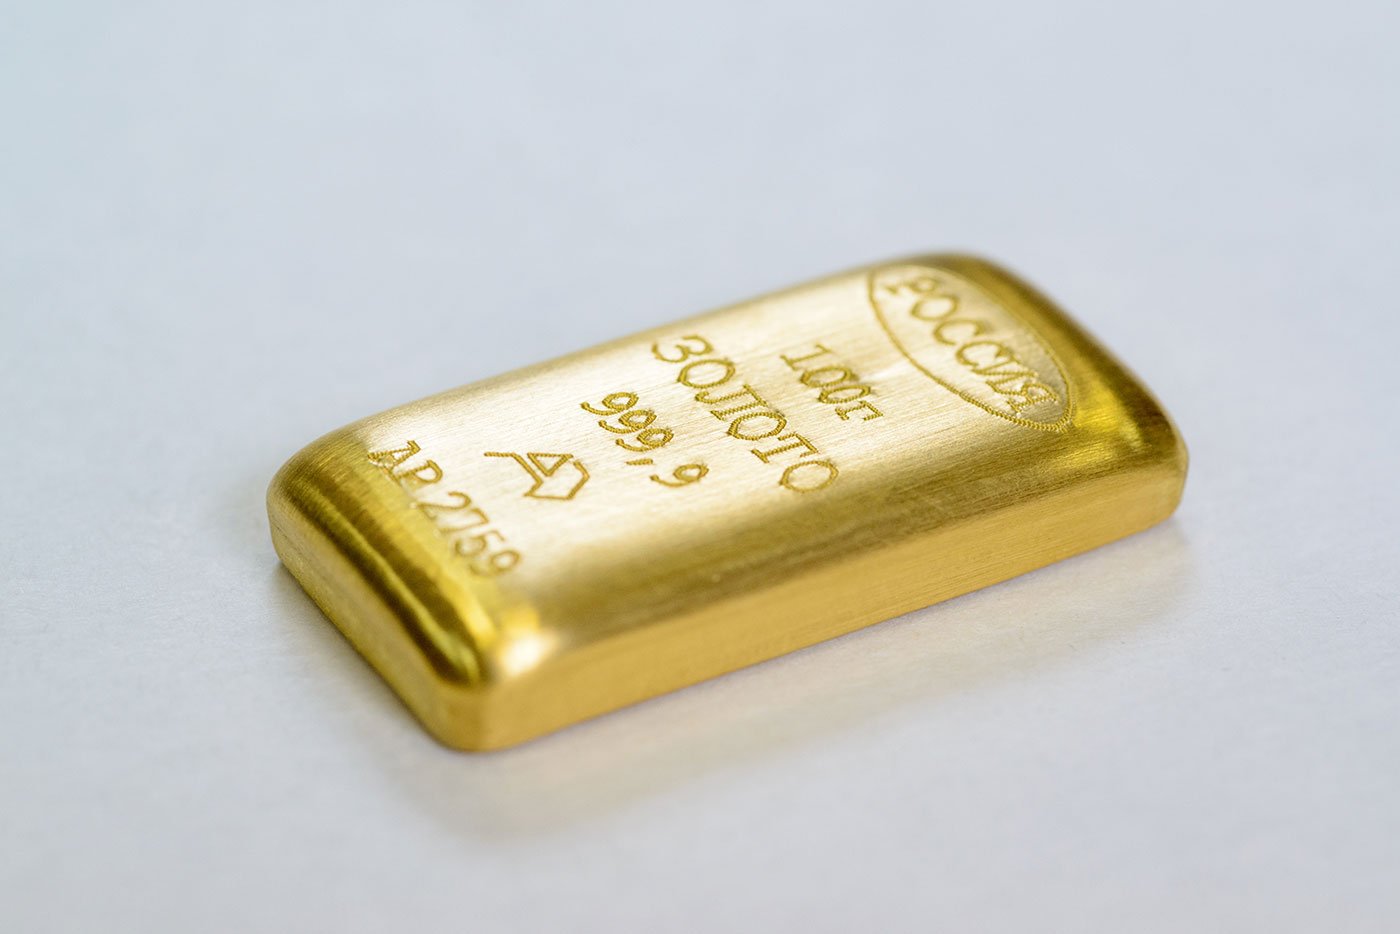 10 гр золота. 100 Граммовый слиток золота. Слиток 20 гр золота. Золото слиток 10гр. 10 Граммовый слиток золота.